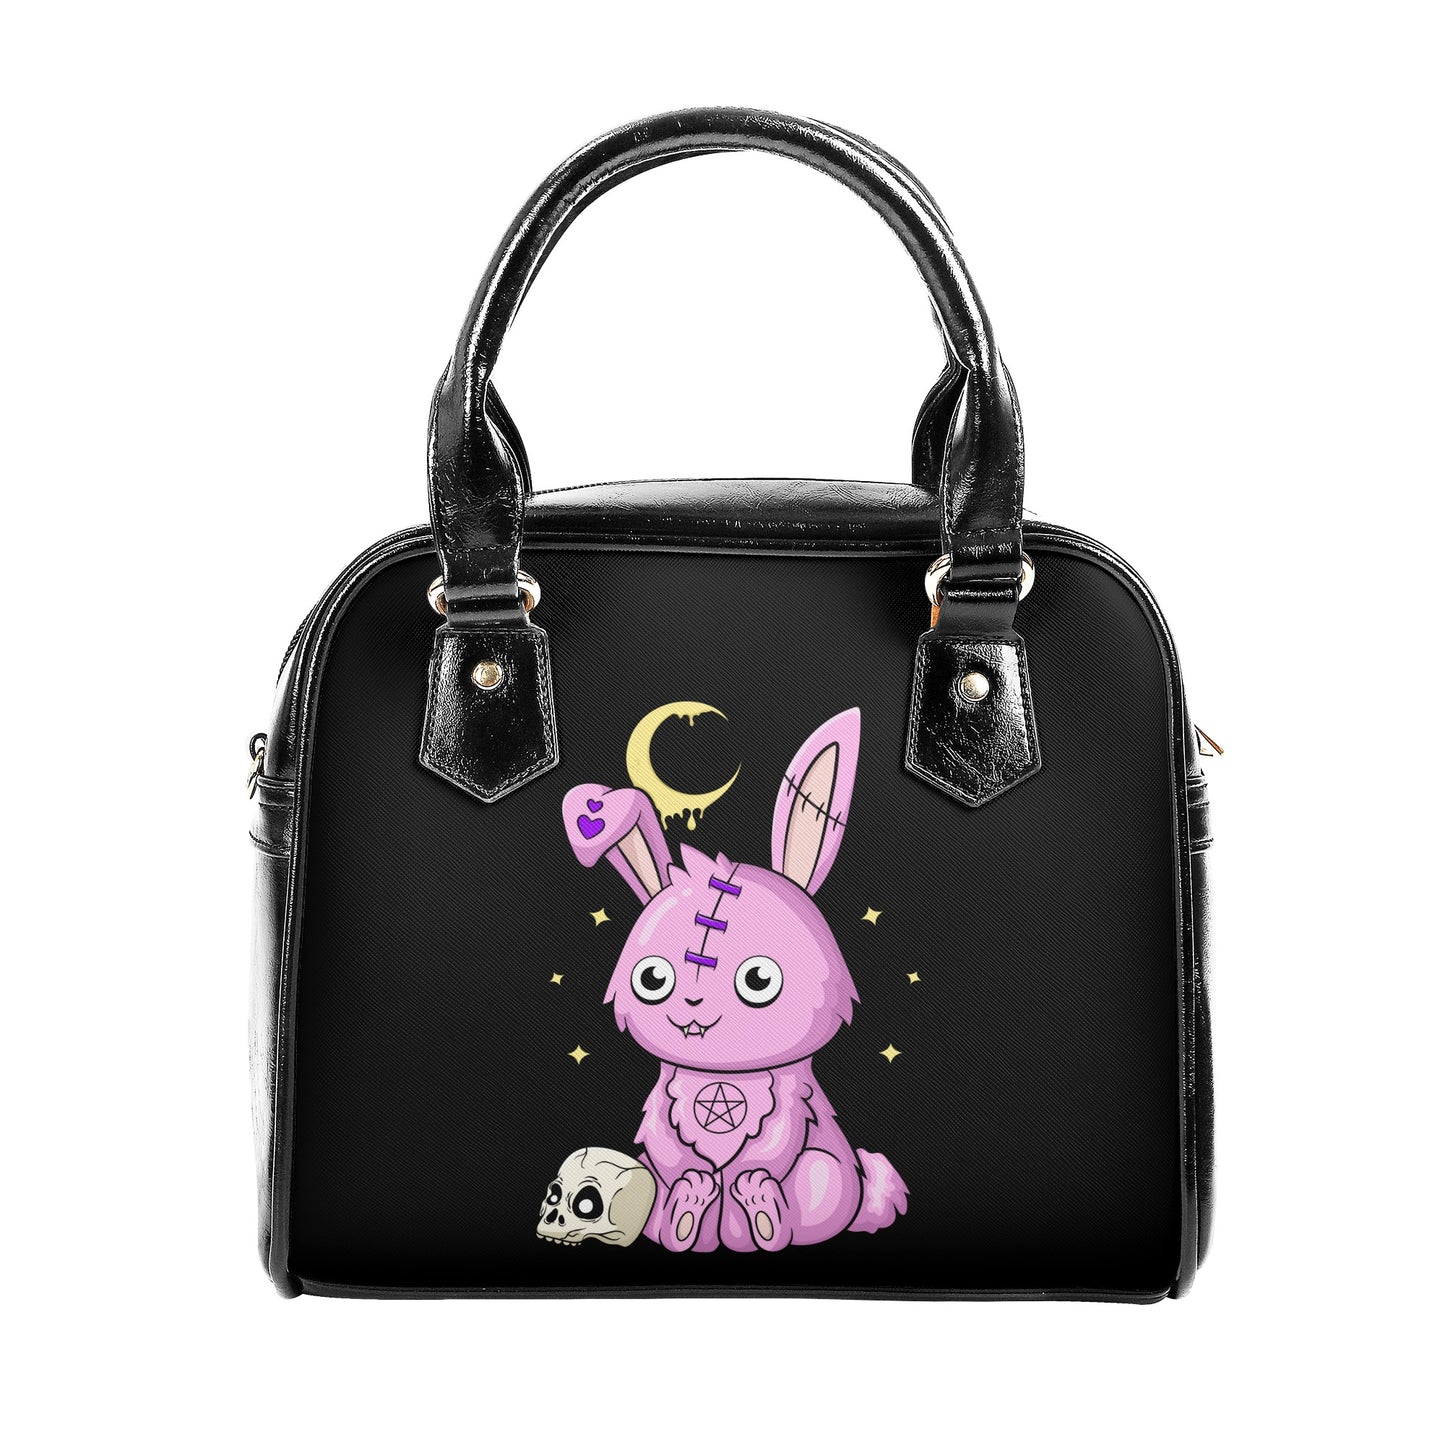 Cute Gothic Bunny Shoulder Handbag